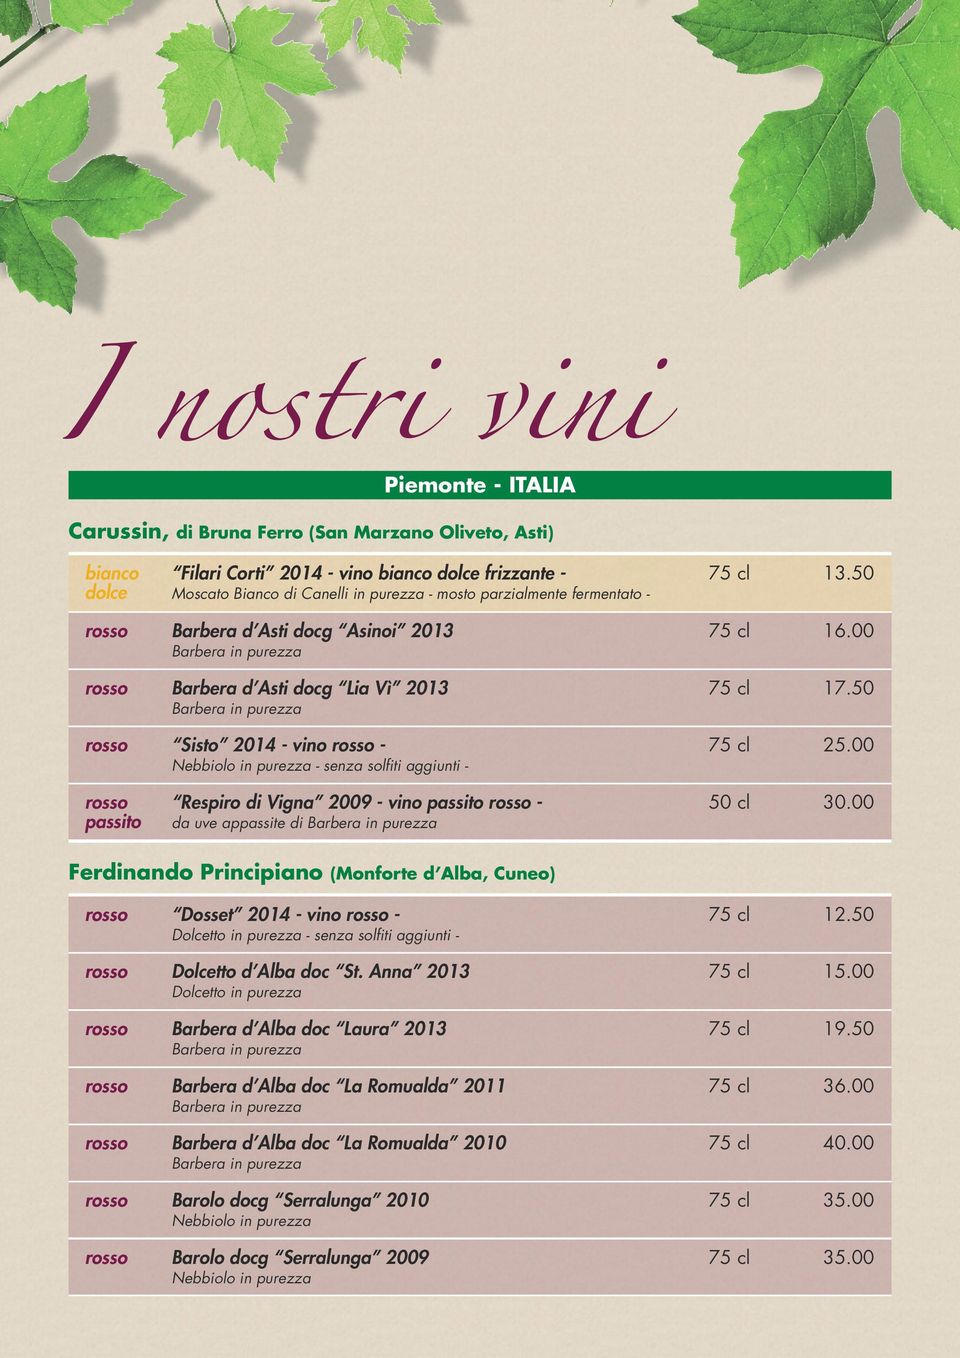 50 Barbera in purezza rosso Sisto 2014 - vino rosso - 75 cl 25.00 Nebbiolo in purezza - senza solfiti aggiunti - rosso Respiro di Vigna 2009 - vino passito rosso - 50 cl 30.